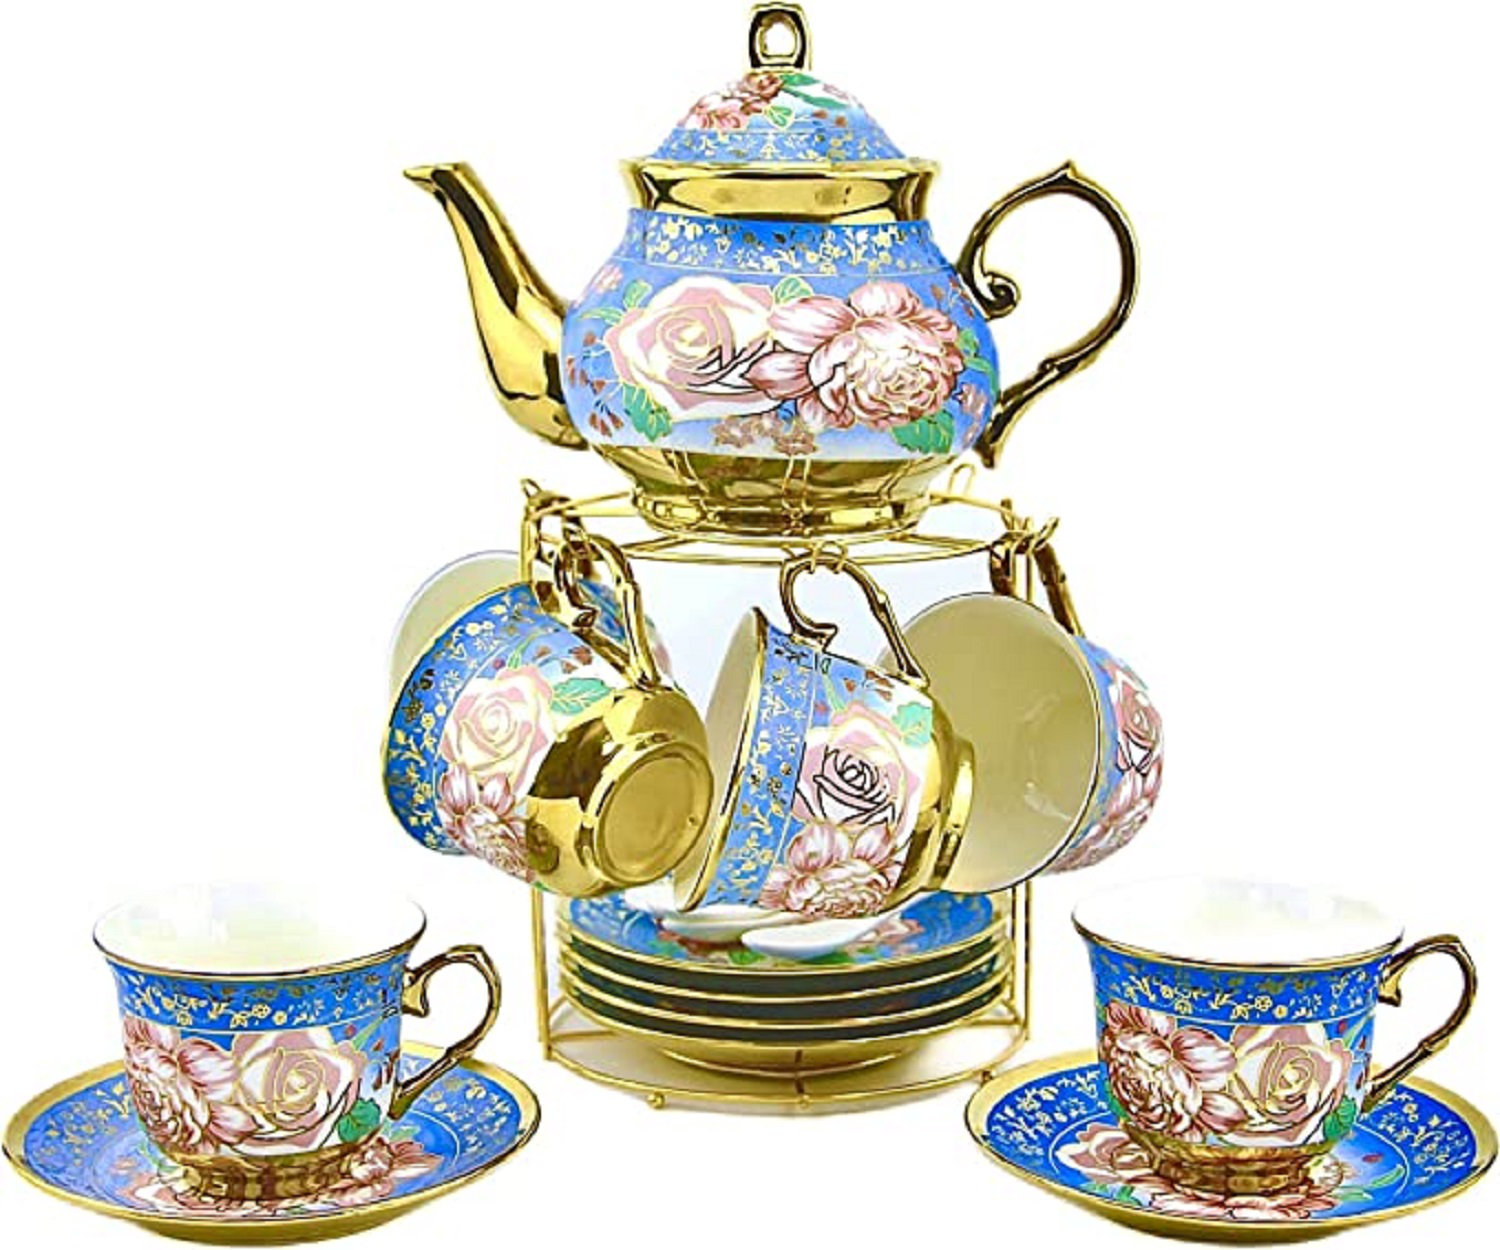 https://assets.wfcdn.com/im/67320760/compr-r85/2402/240249793/house-of-hampton-fazer-27oz-floral-teapot-set.jpg